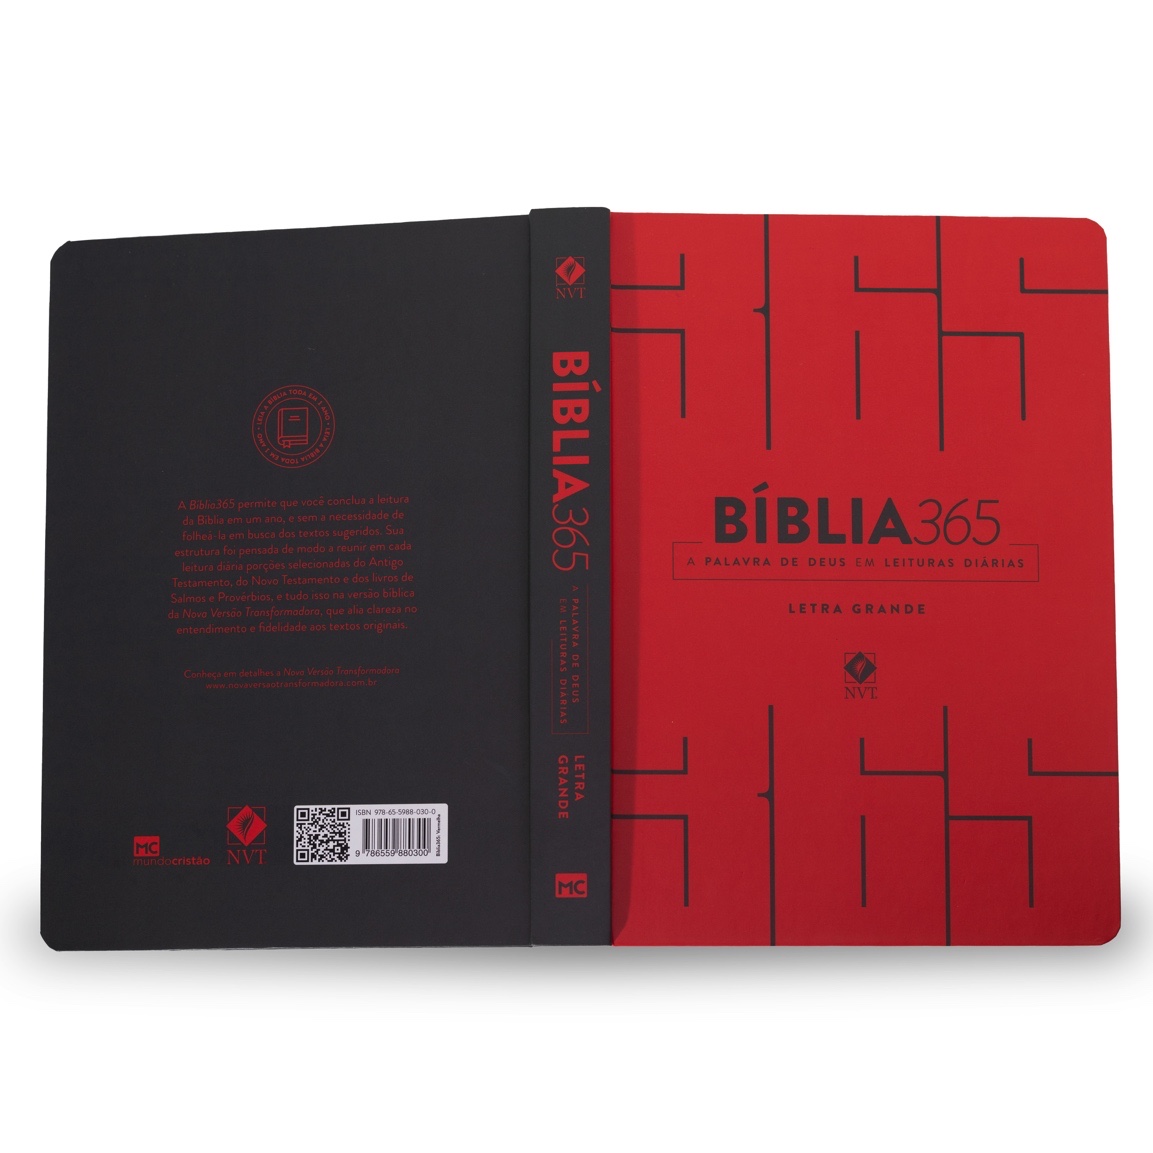 Bíblia 365 NVT - Capa Vermelha - LETRA GRANDE